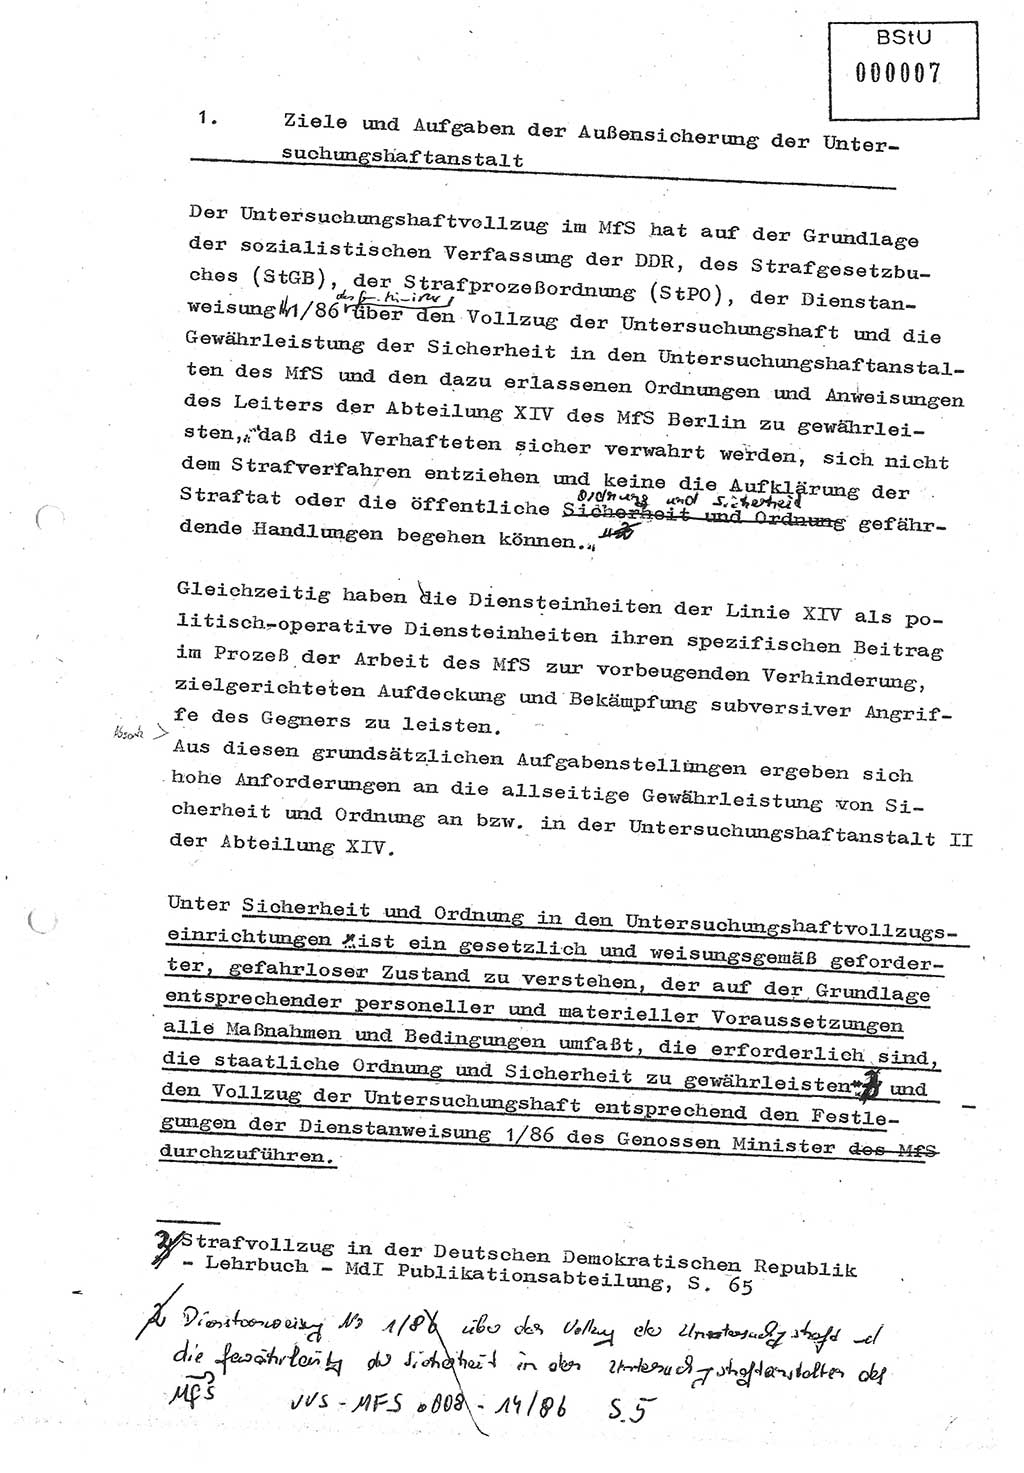 Diplomarbeit (Entwurf) Oberleutnant Peter Parke (Abt. ⅩⅣ), Ministerium für Staatssicherheit (MfS) [Deutsche Demokratische Republik (DDR)], Juristische Hochschule (JHS), Geheime Verschlußsache (GVS) o001-98/86, Potsdam 1986, Seite 7 (Dipl.-Arb. MfS DDR JHS GVS o001-98/86 1986, S. 7)